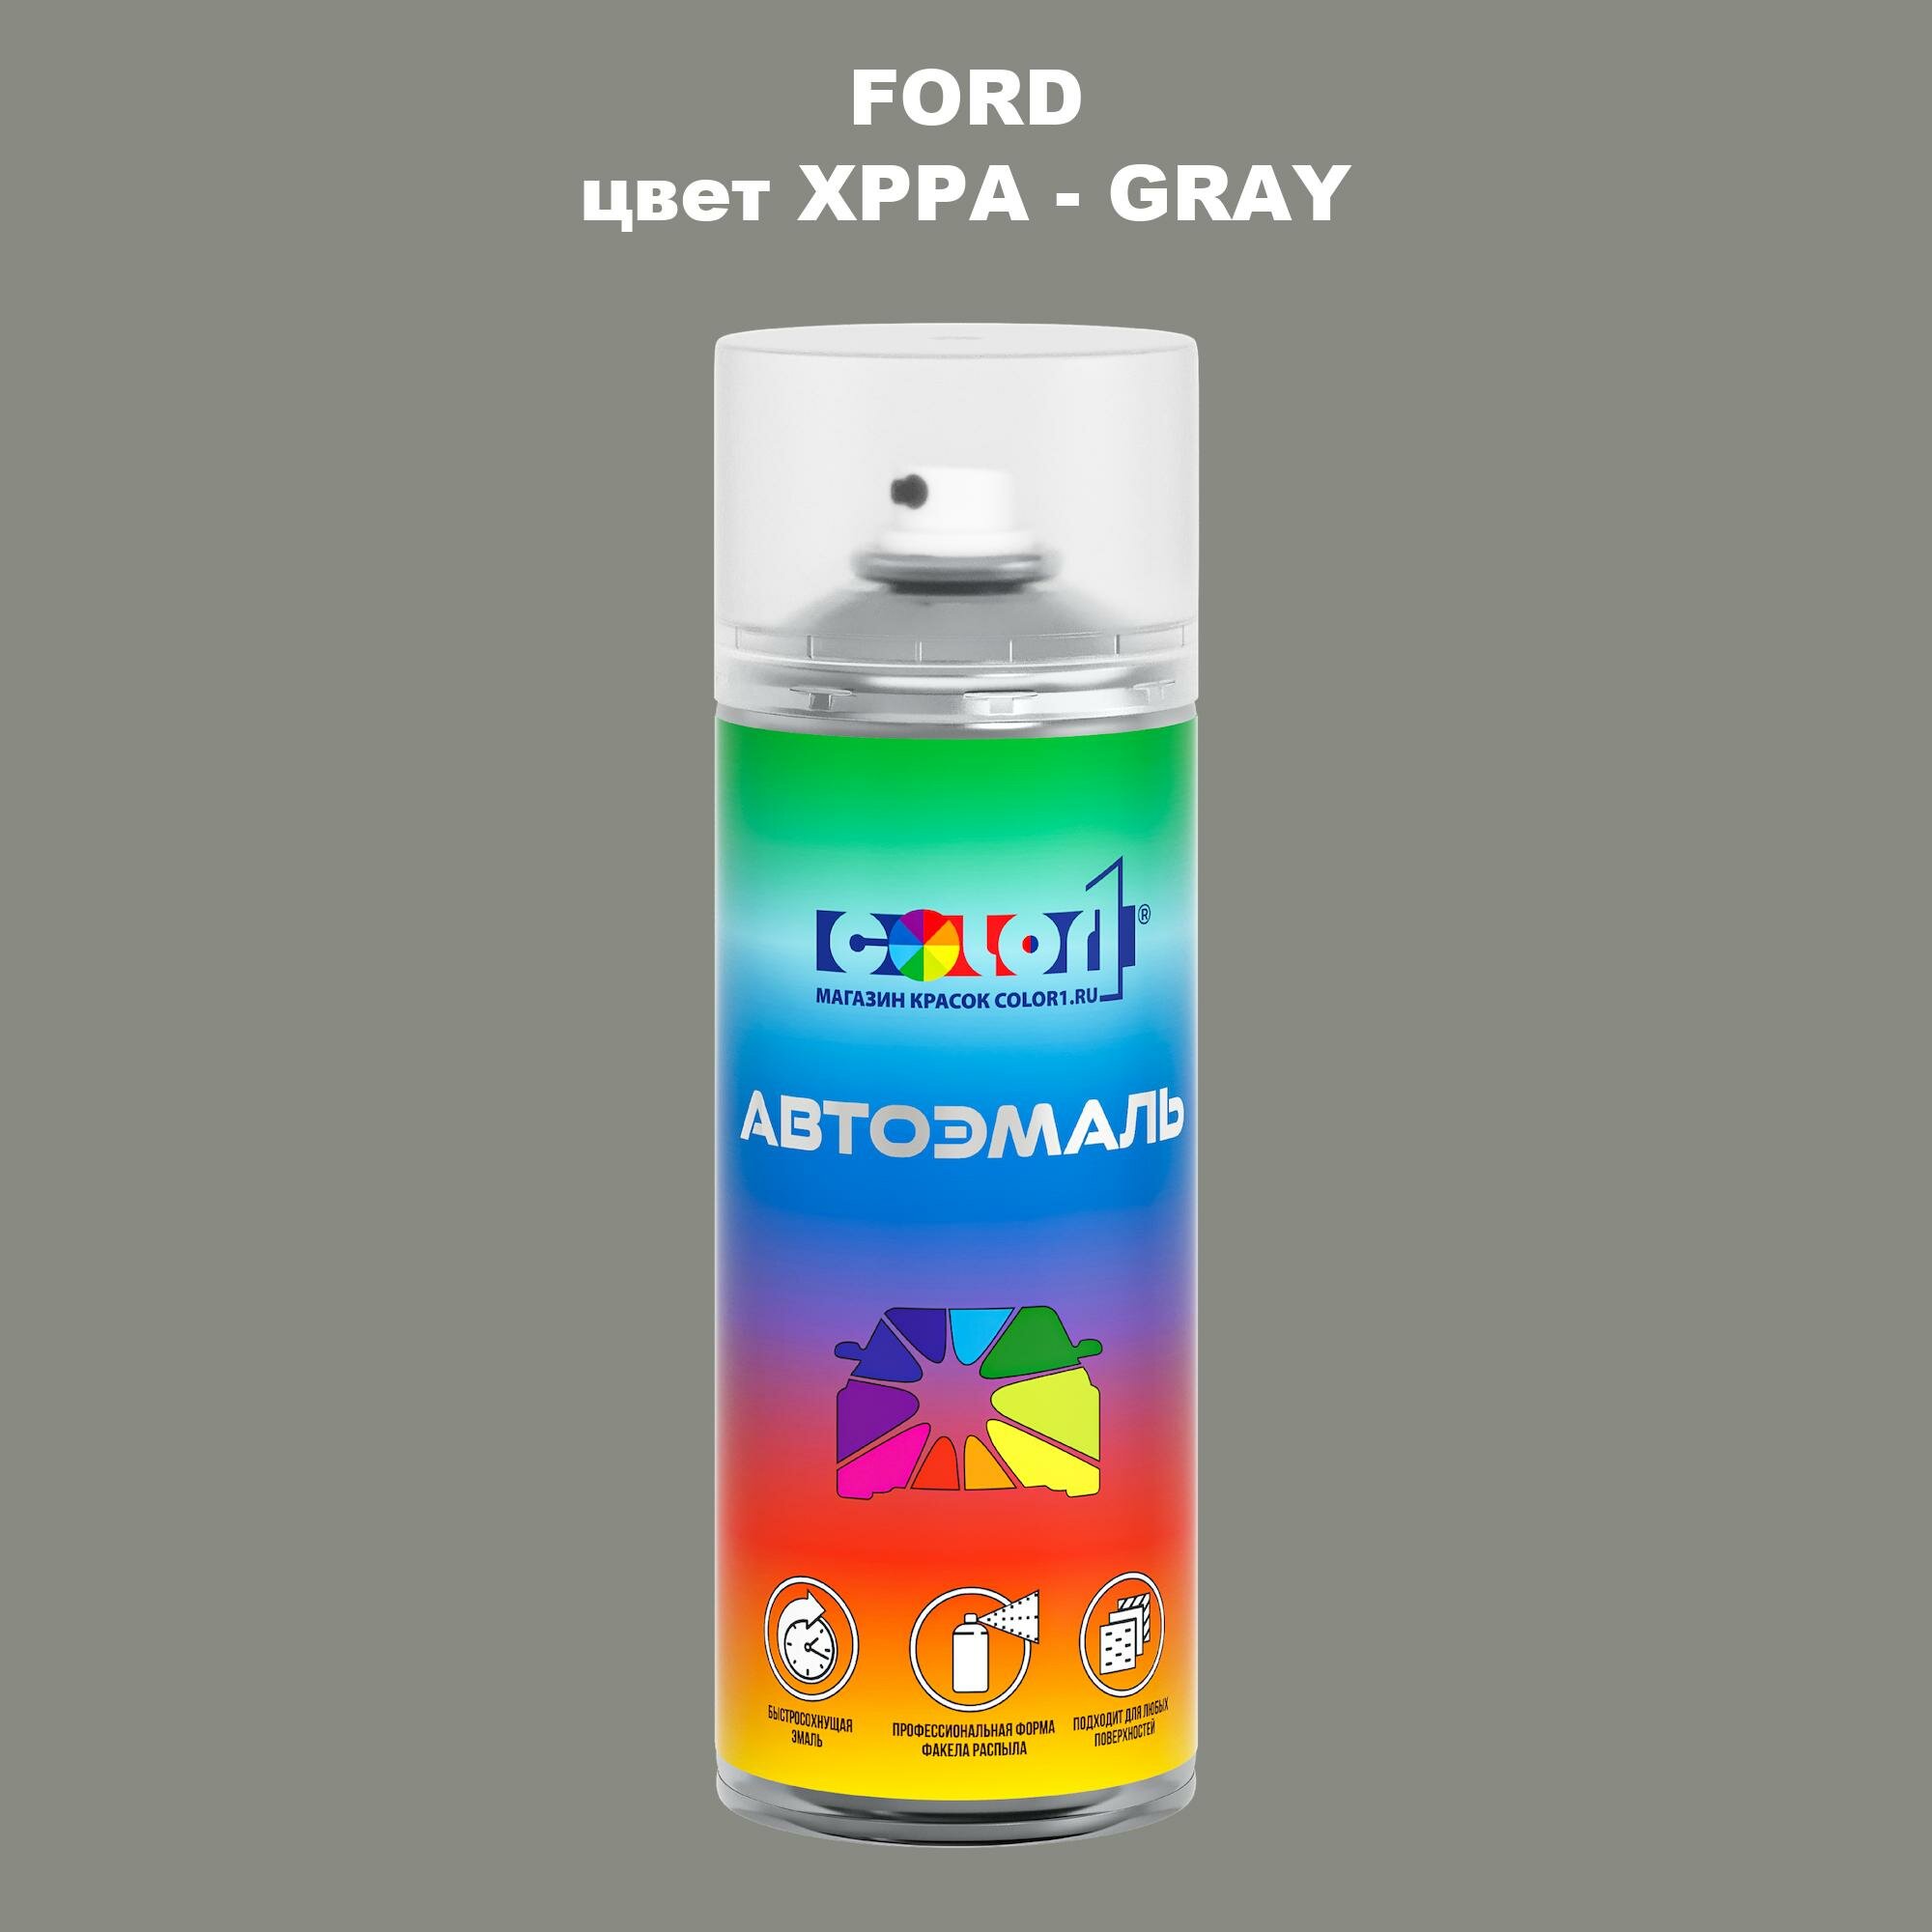 Аэрозольная краска COLOR1 для FORD, цвет XPPA - GRAY